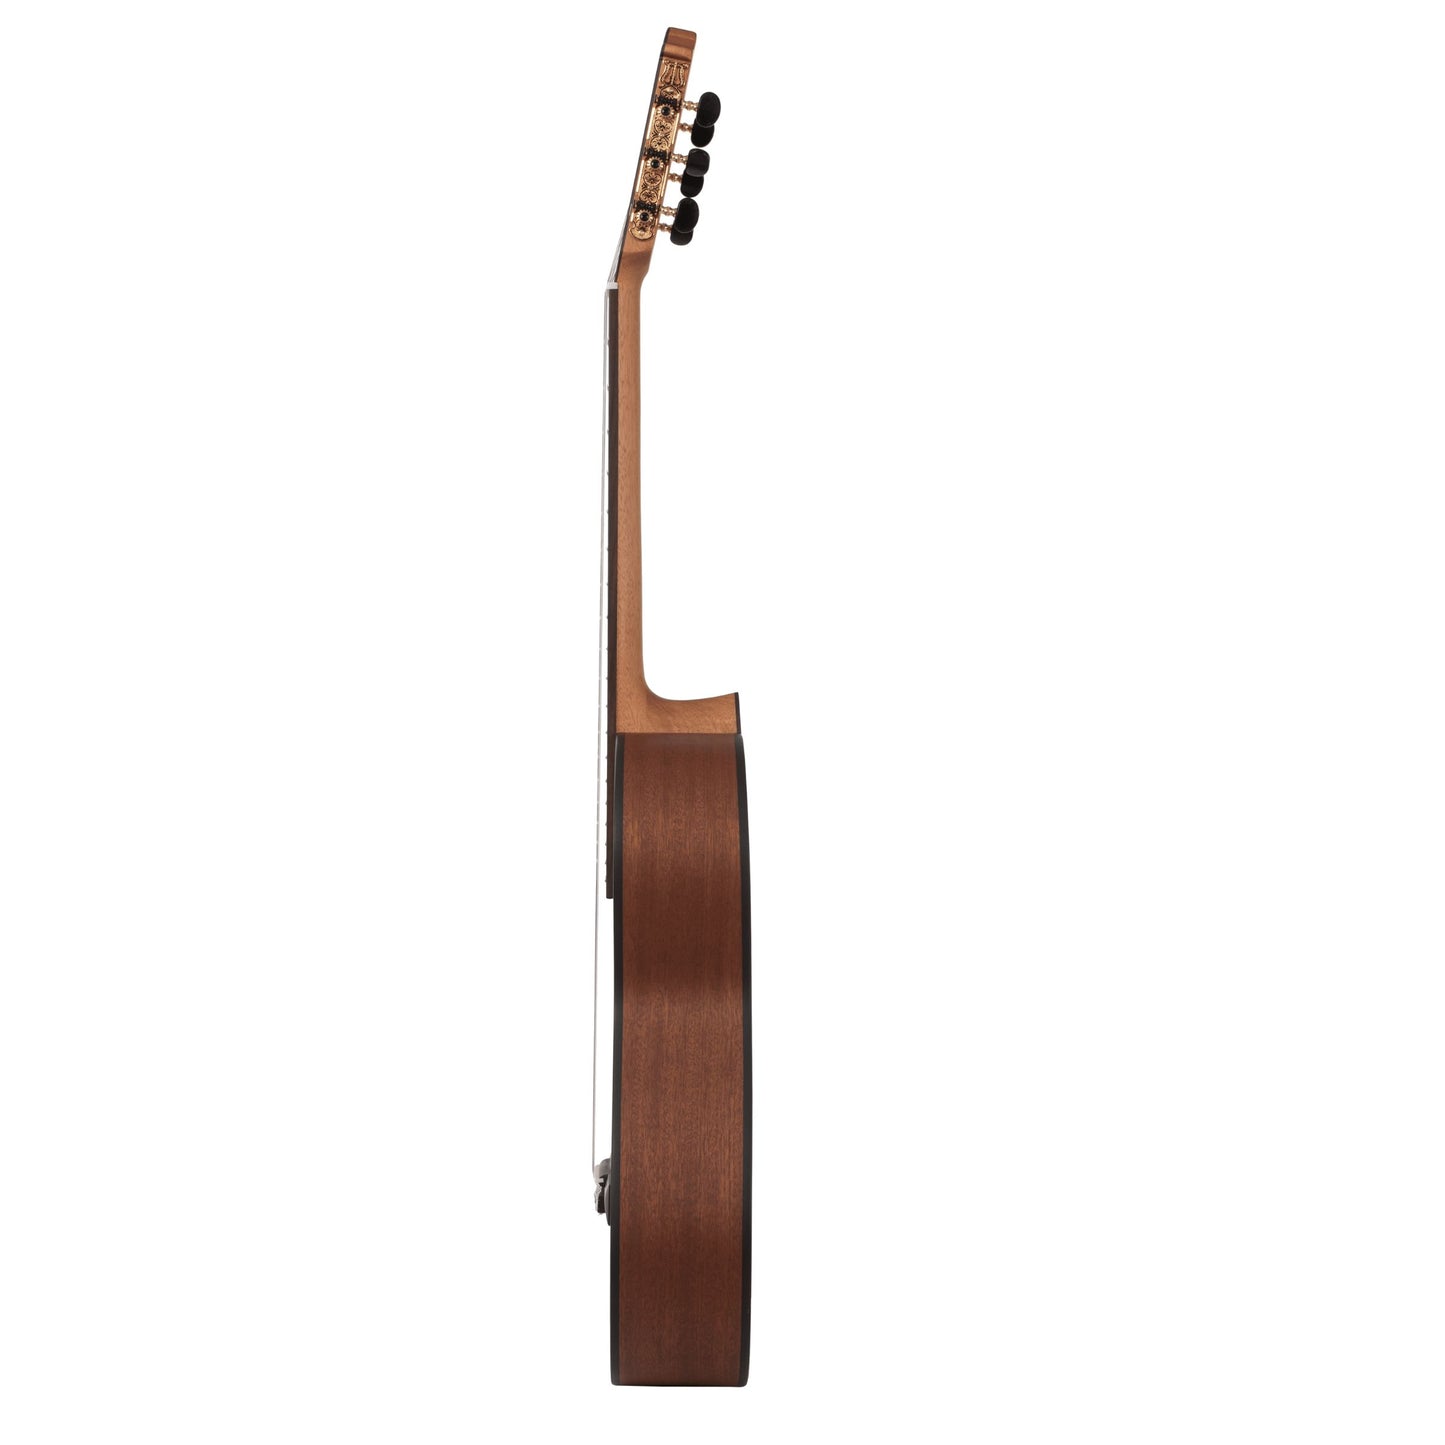 Katoh MCG35C Classical Guitar